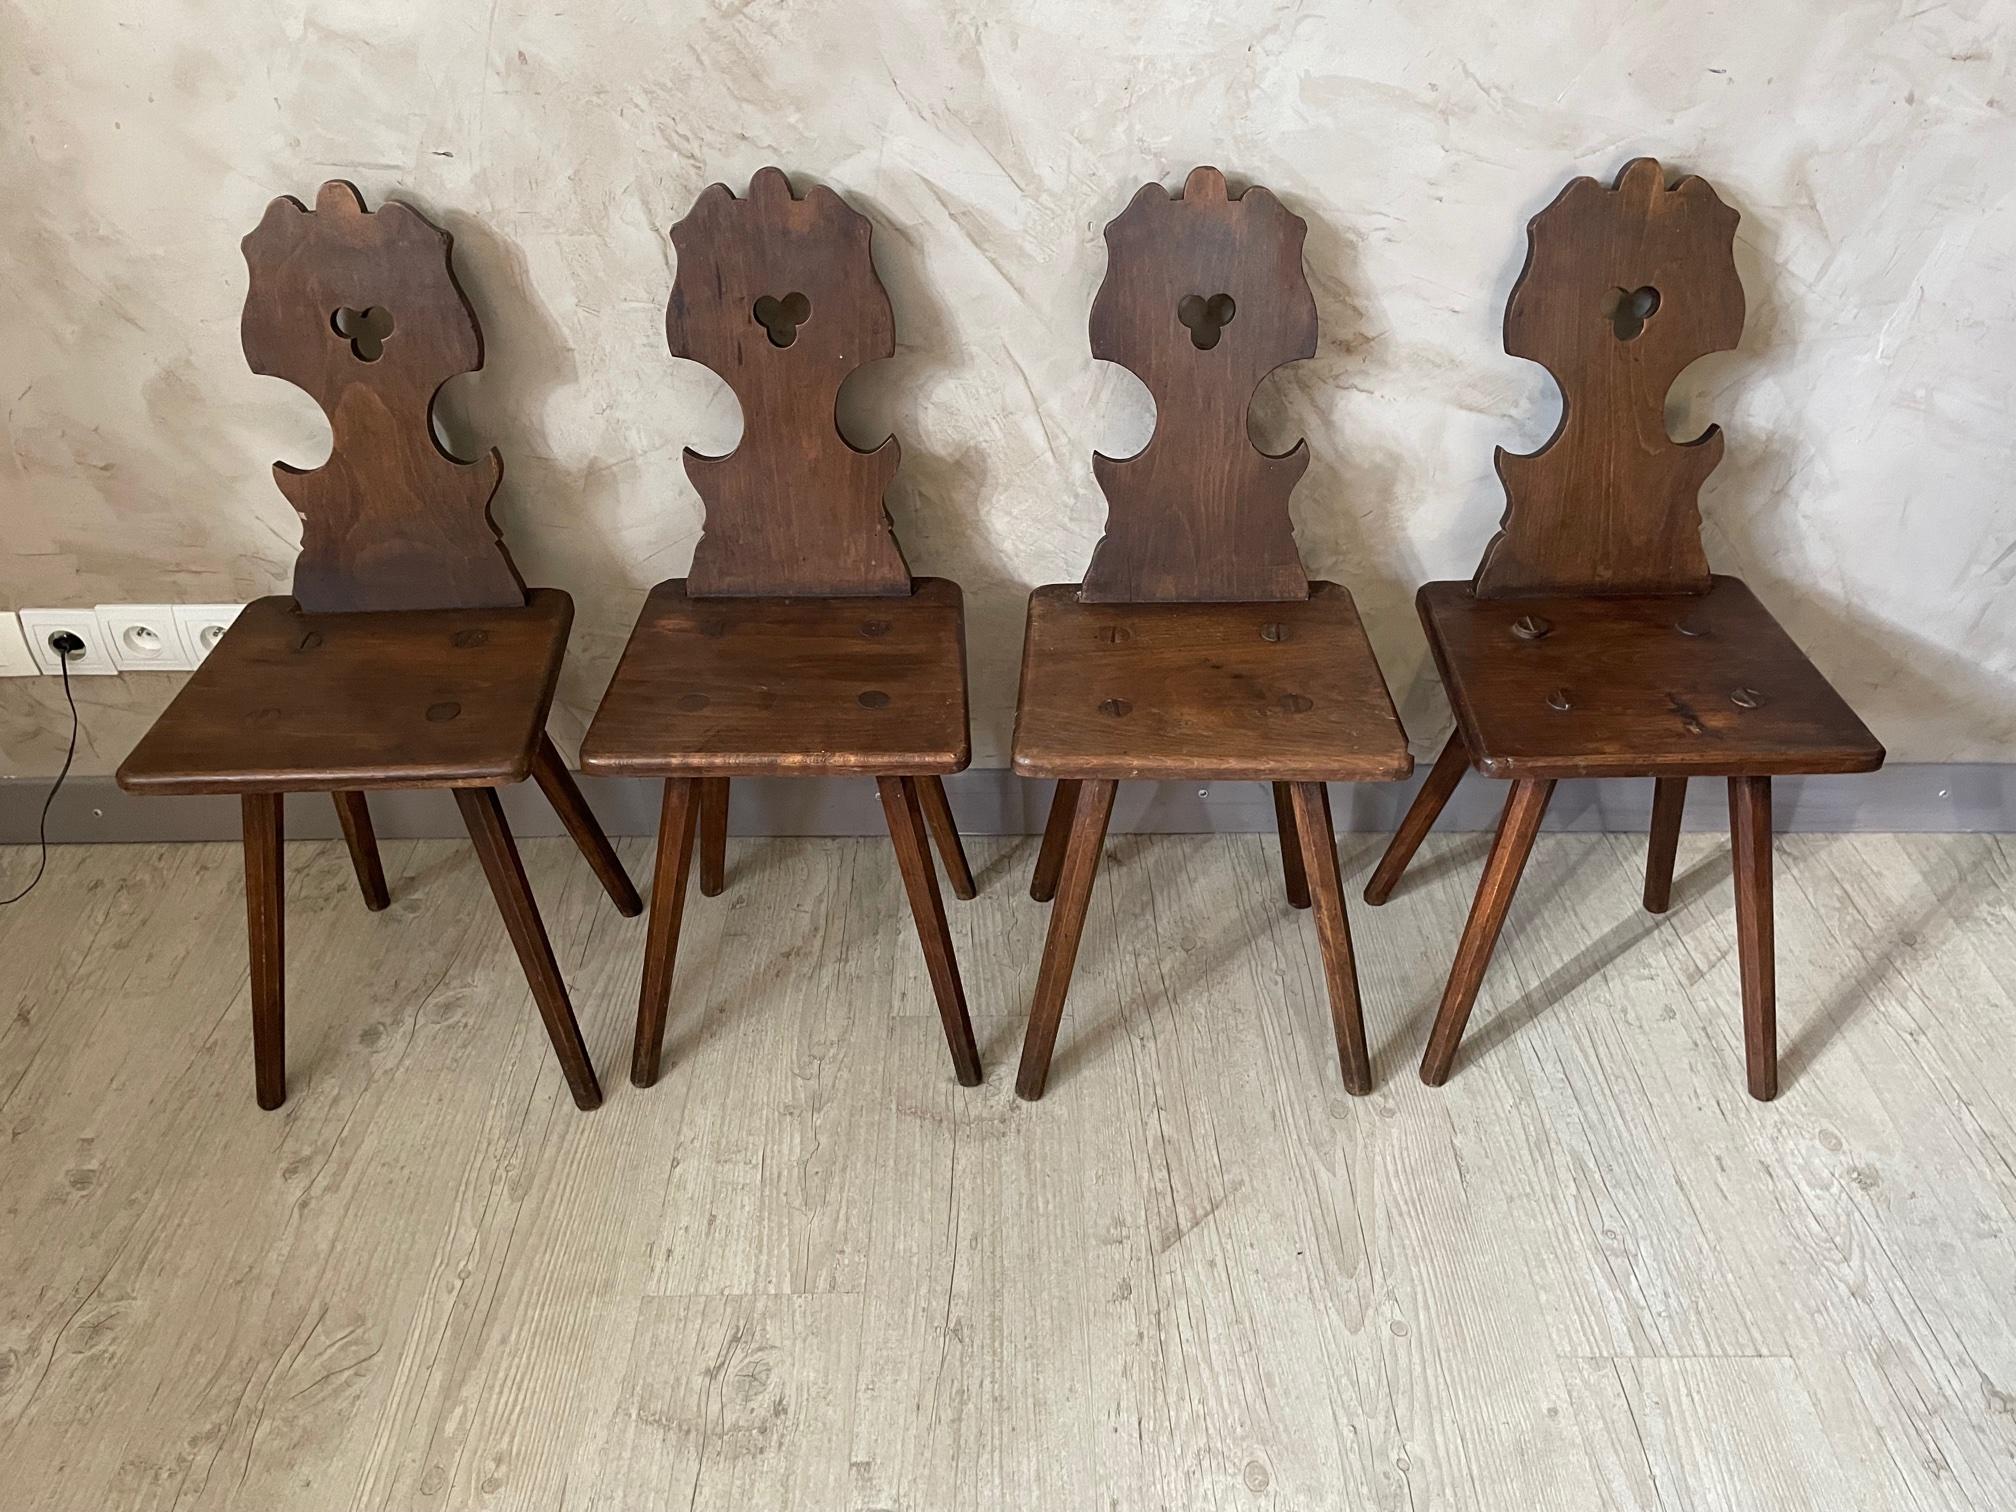 Très bel ensemble de quatre chaises régionales alsaciennes en noyer du XIXe siècle, datant des années 1870. 
La chaise alsacienne se caractérise essentiellement par ses pieds divergents et son dossier décoré et se distingue donc au premier abord